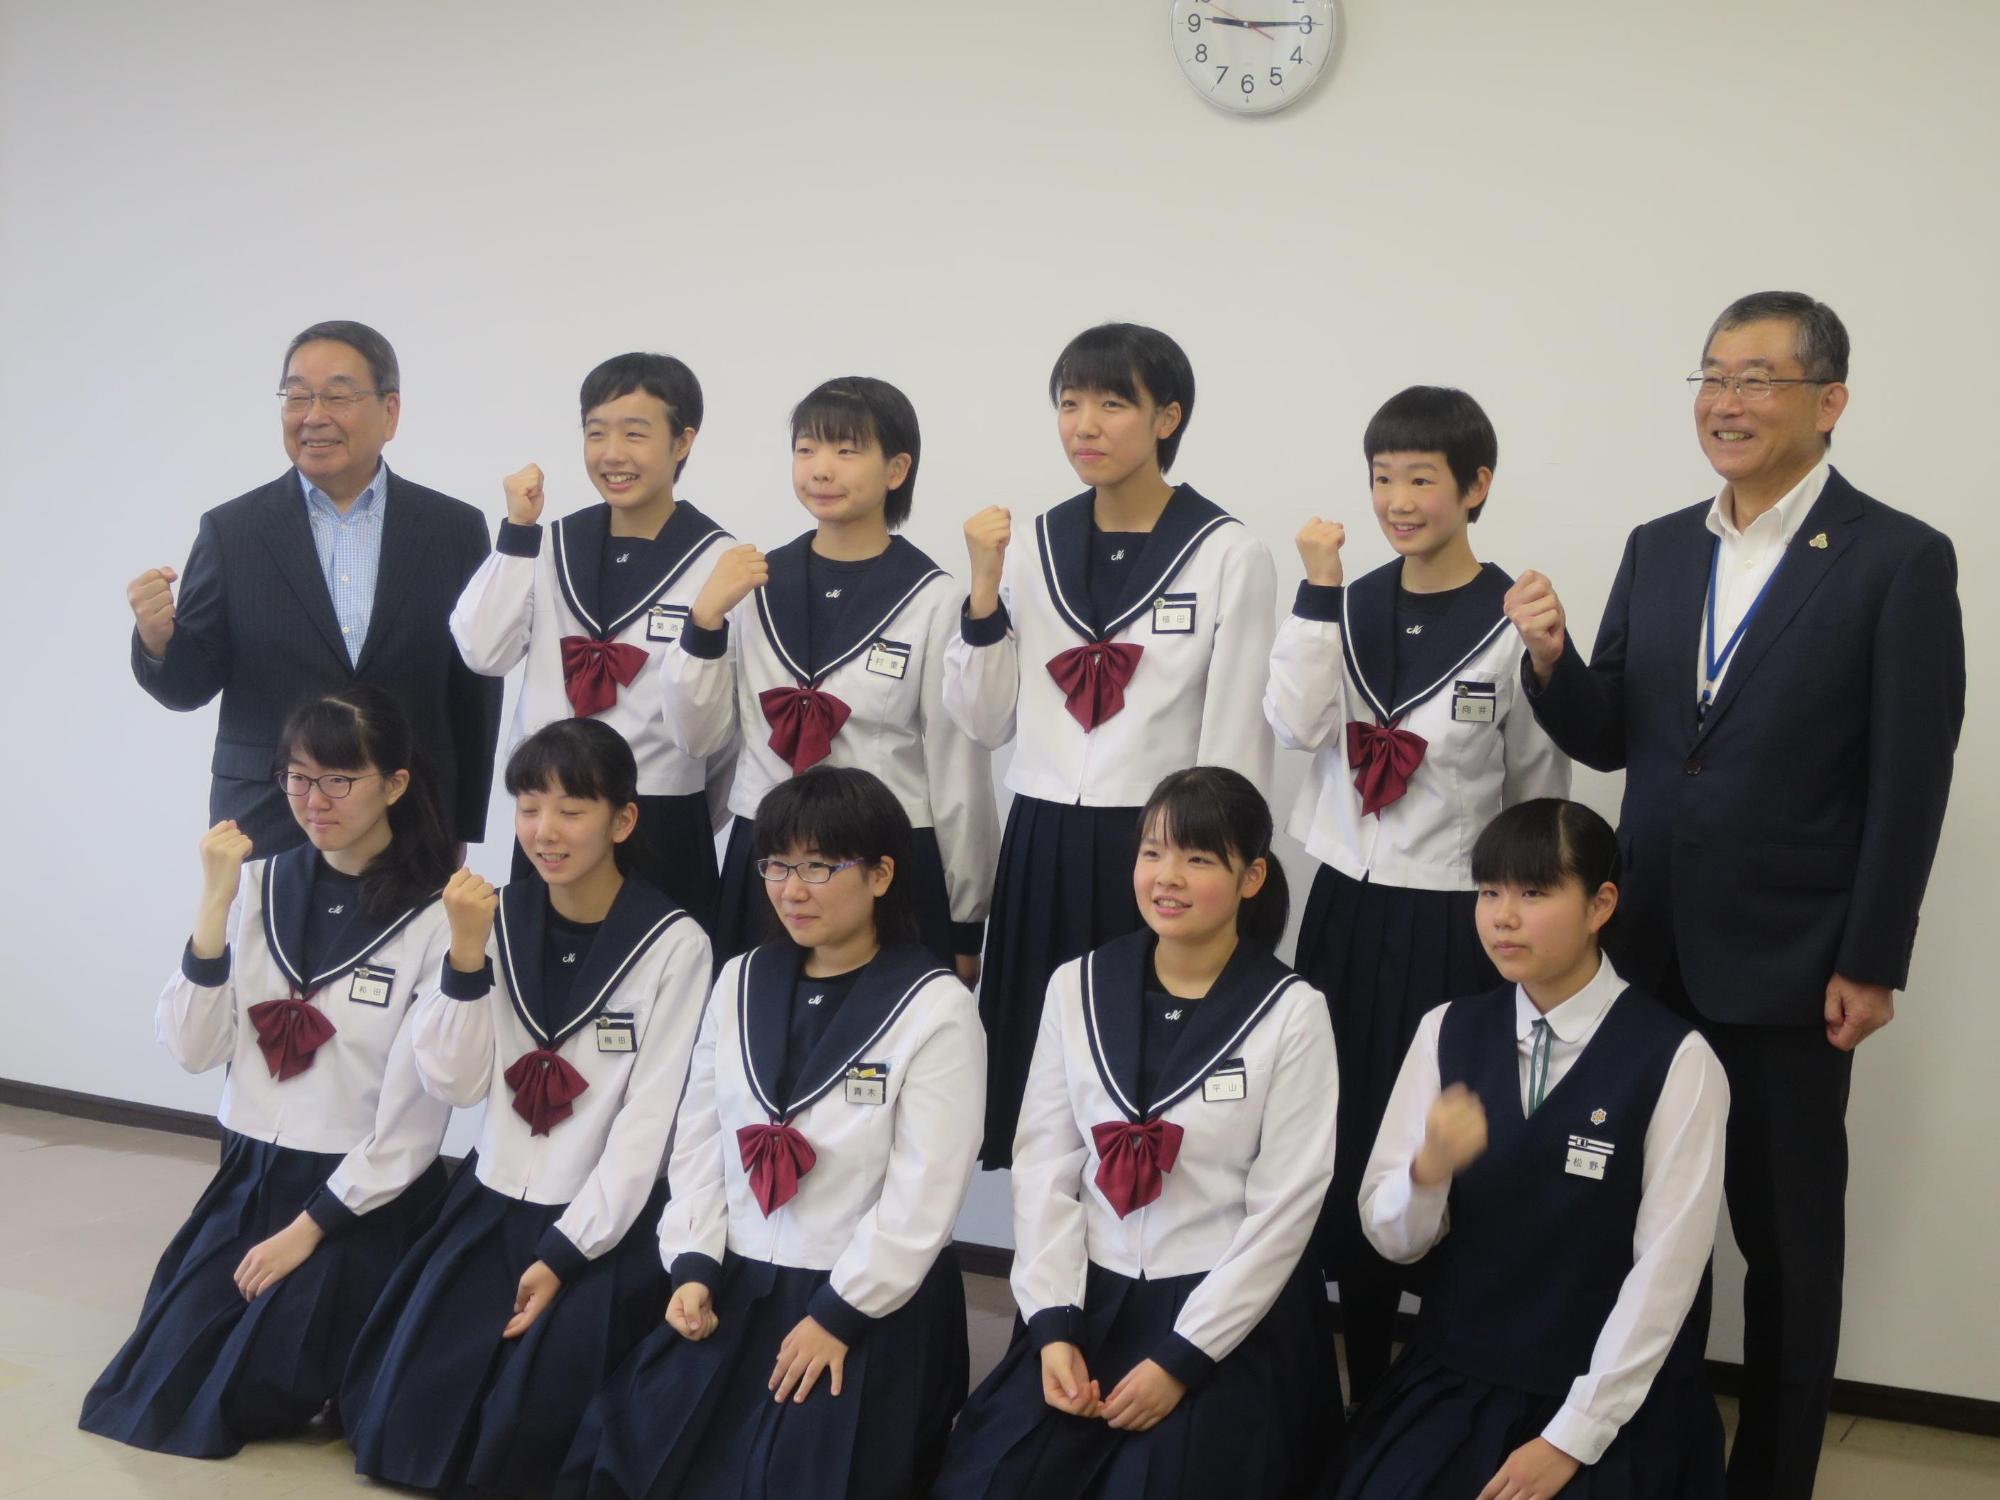 恵庭中学校、恵み野中学校の卓球部の生徒・指導者と原田市長が記念撮影している写真